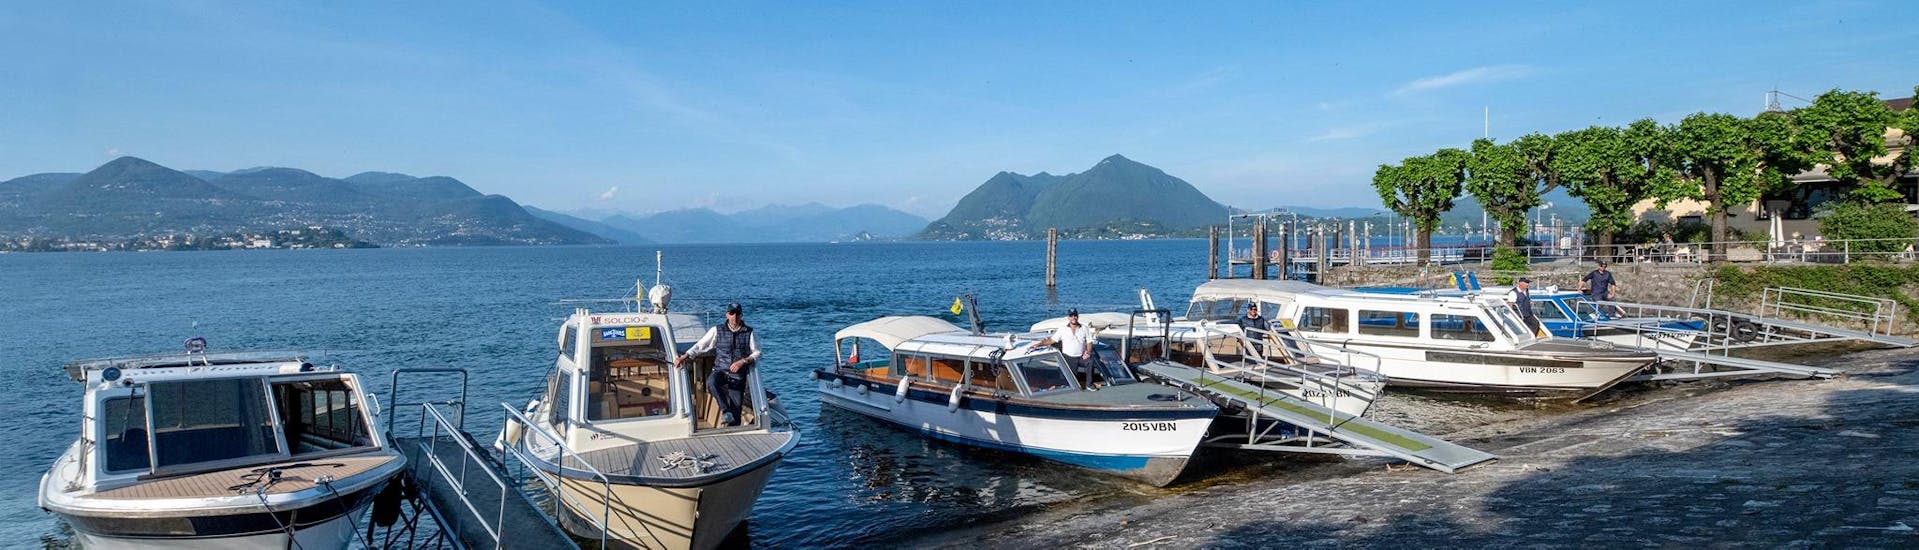 Vista delle barche usate per i transfer verso le Isole Borromee da parte di Lake Tours Stresa.